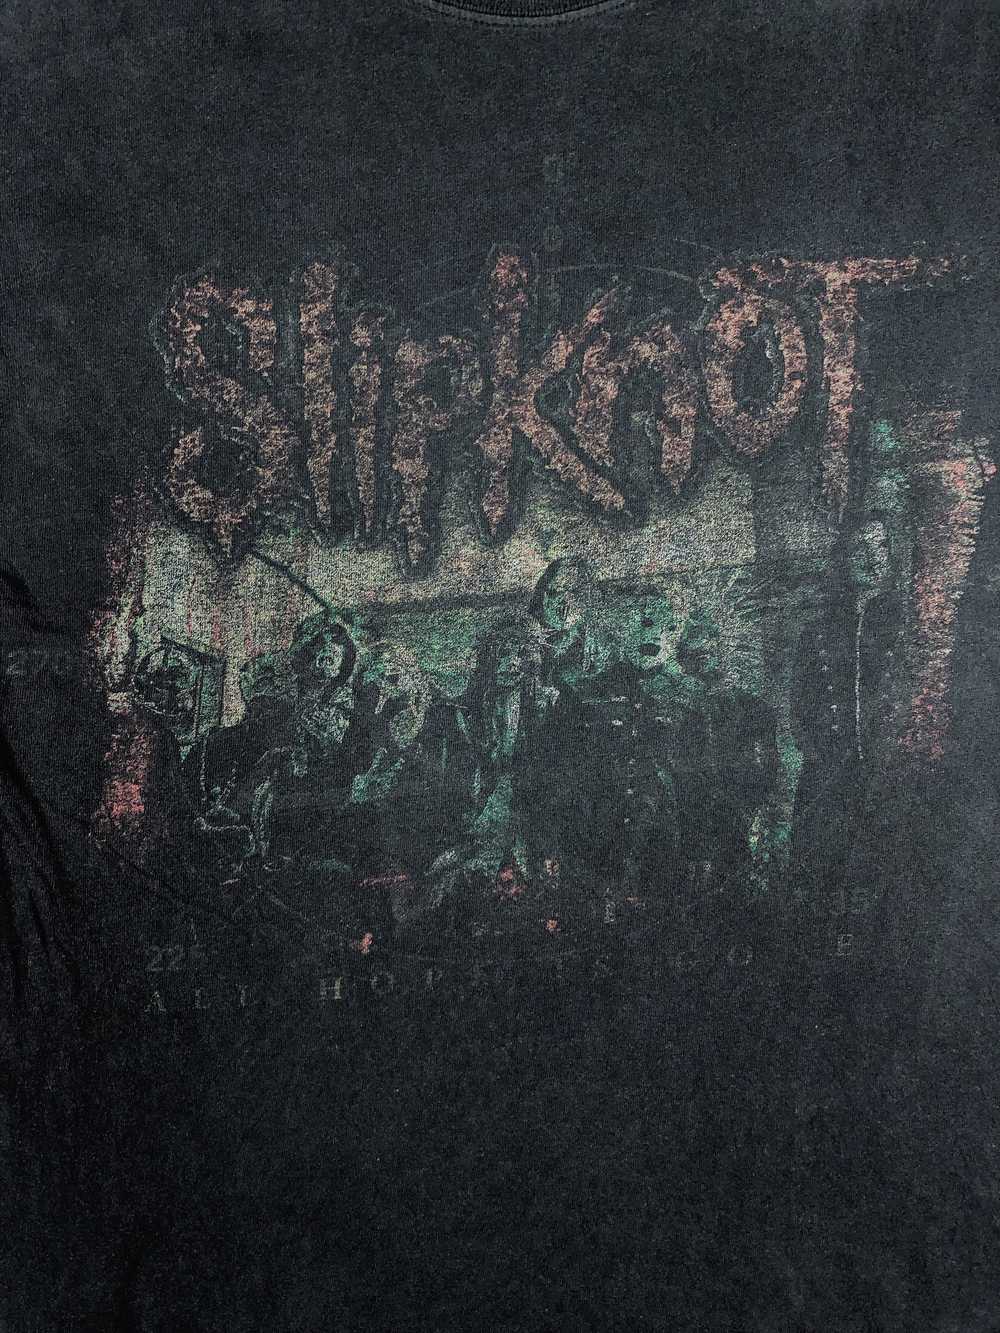 Slipknot - SLIPKNOT ROCK BAND SHIRTS - image 2